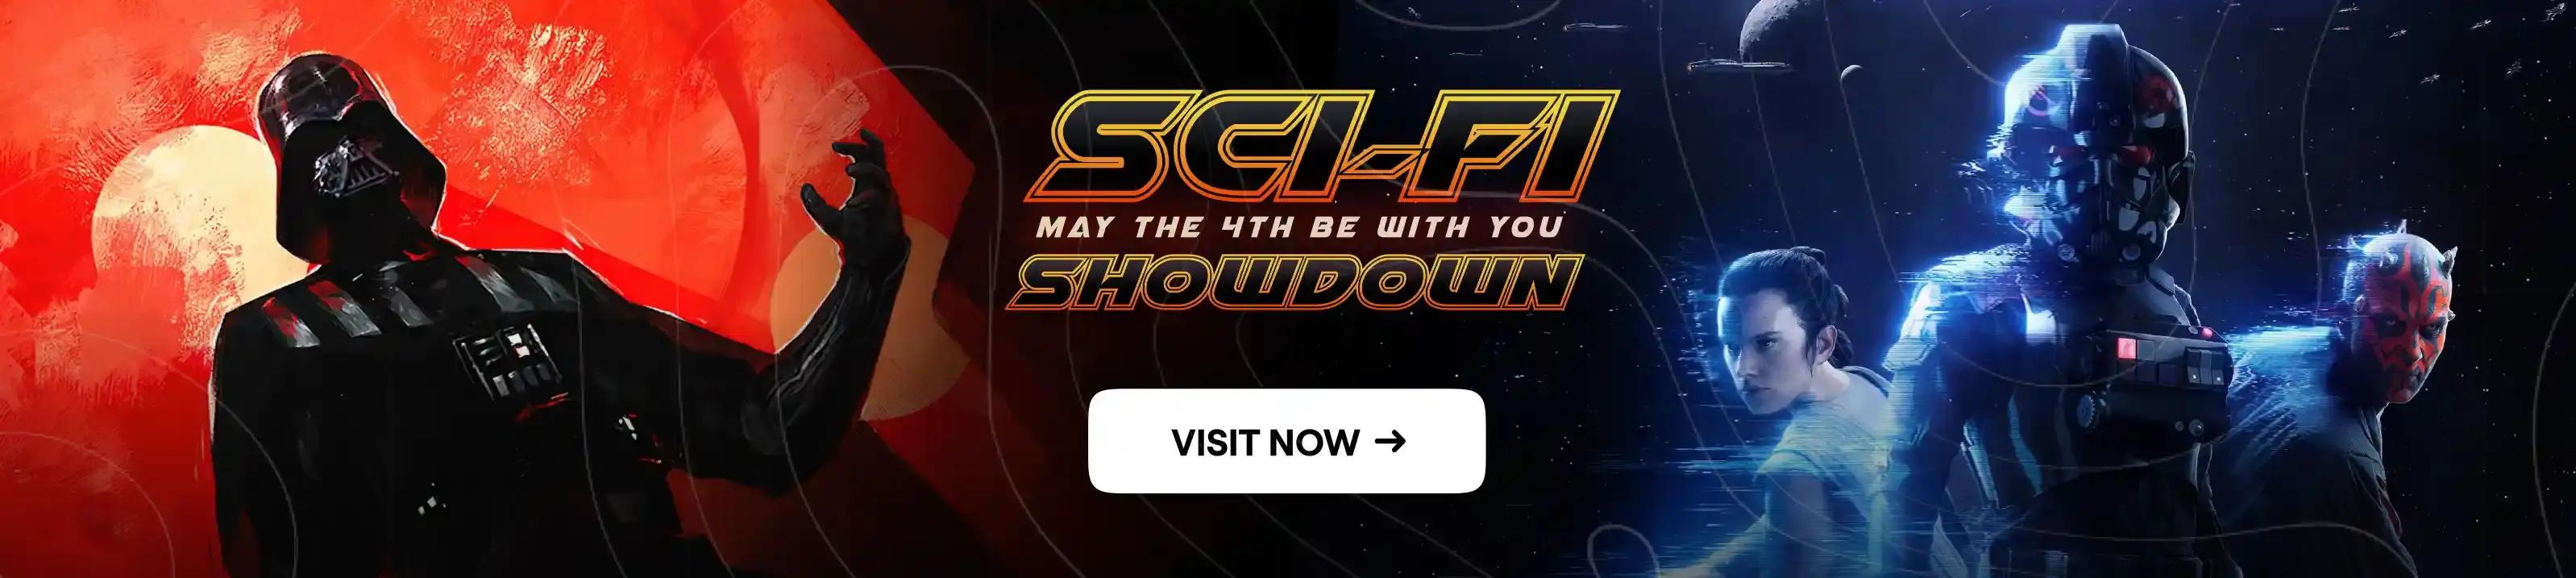 Sci-Fi Showdown Mobile